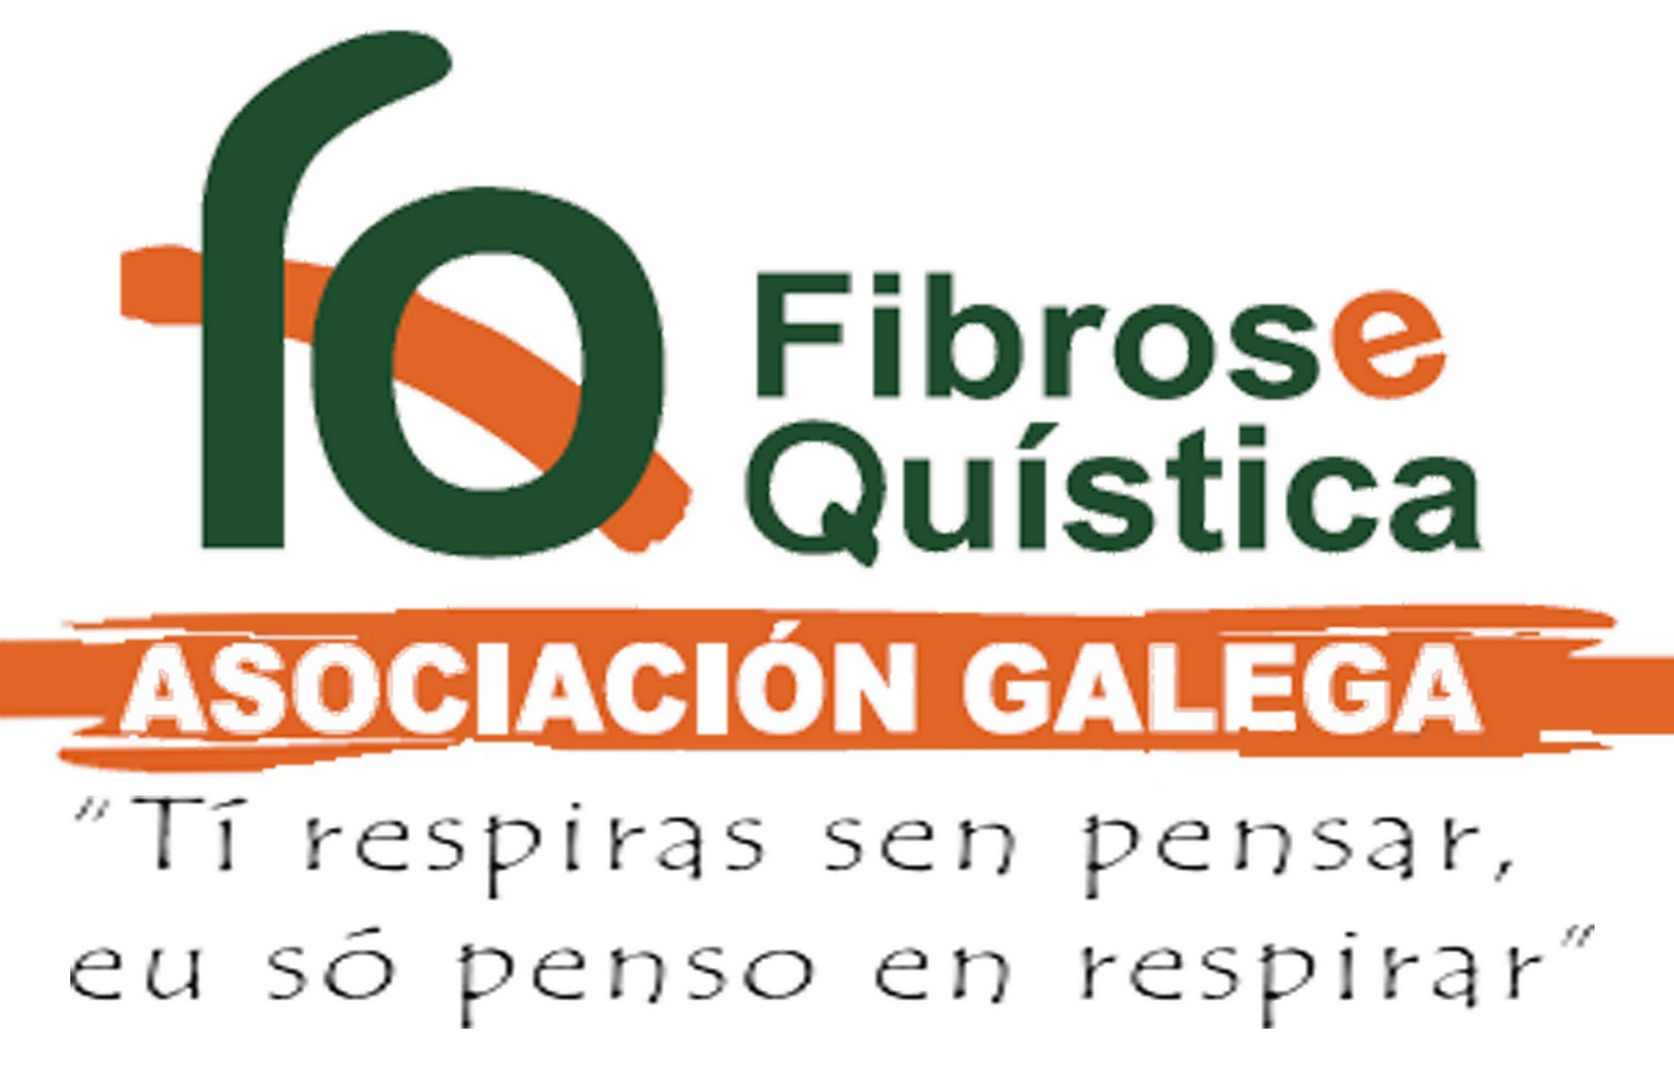 federacion española fibrosis quistica la asociacion gallega de fq quiere dar las gracias a todos los organismos publicos y privados que han colaborado con la entidad